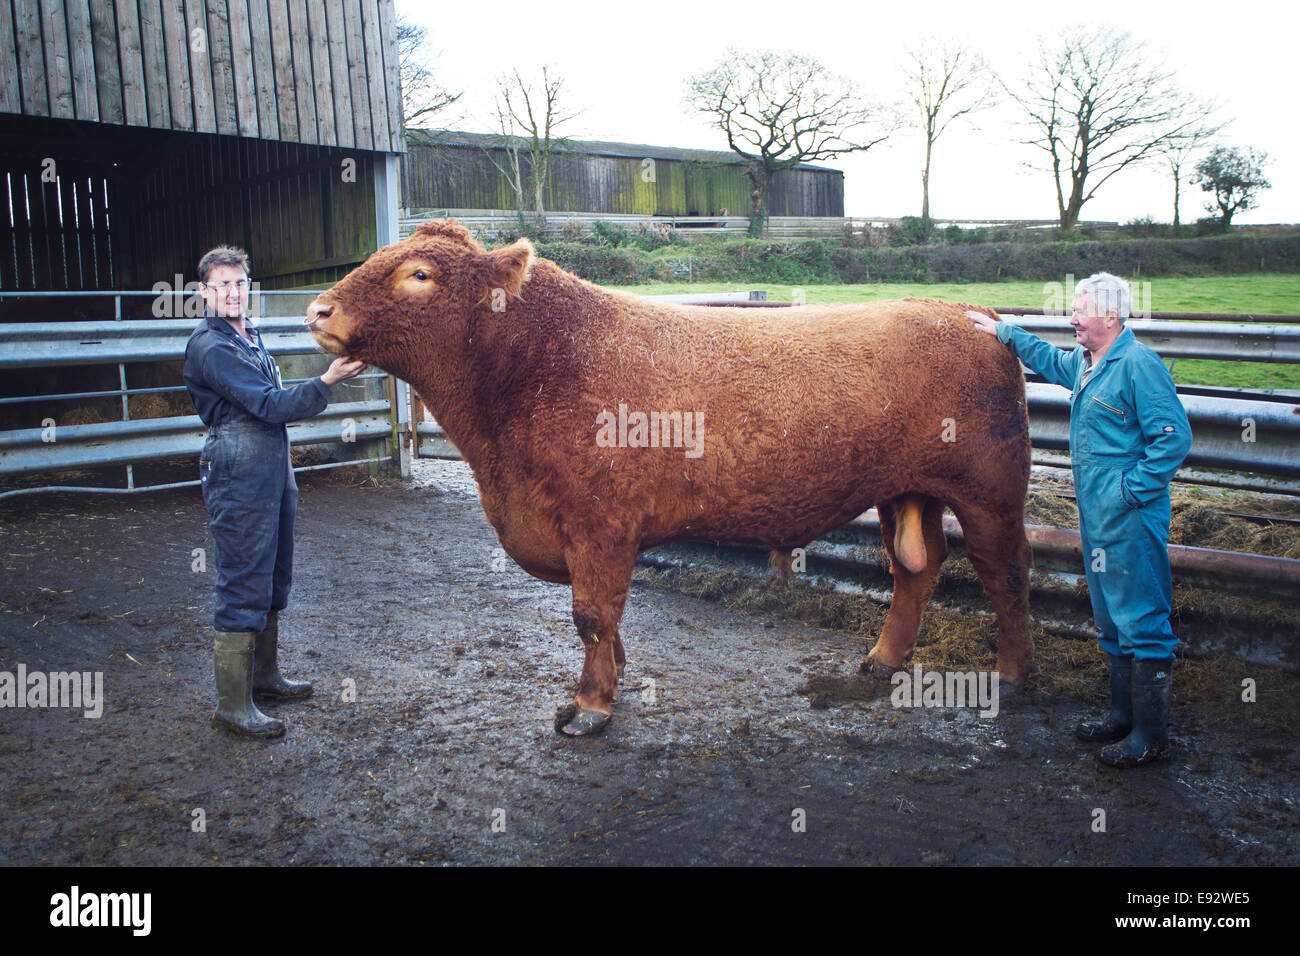 A prize South Devon Bull Stock Photo